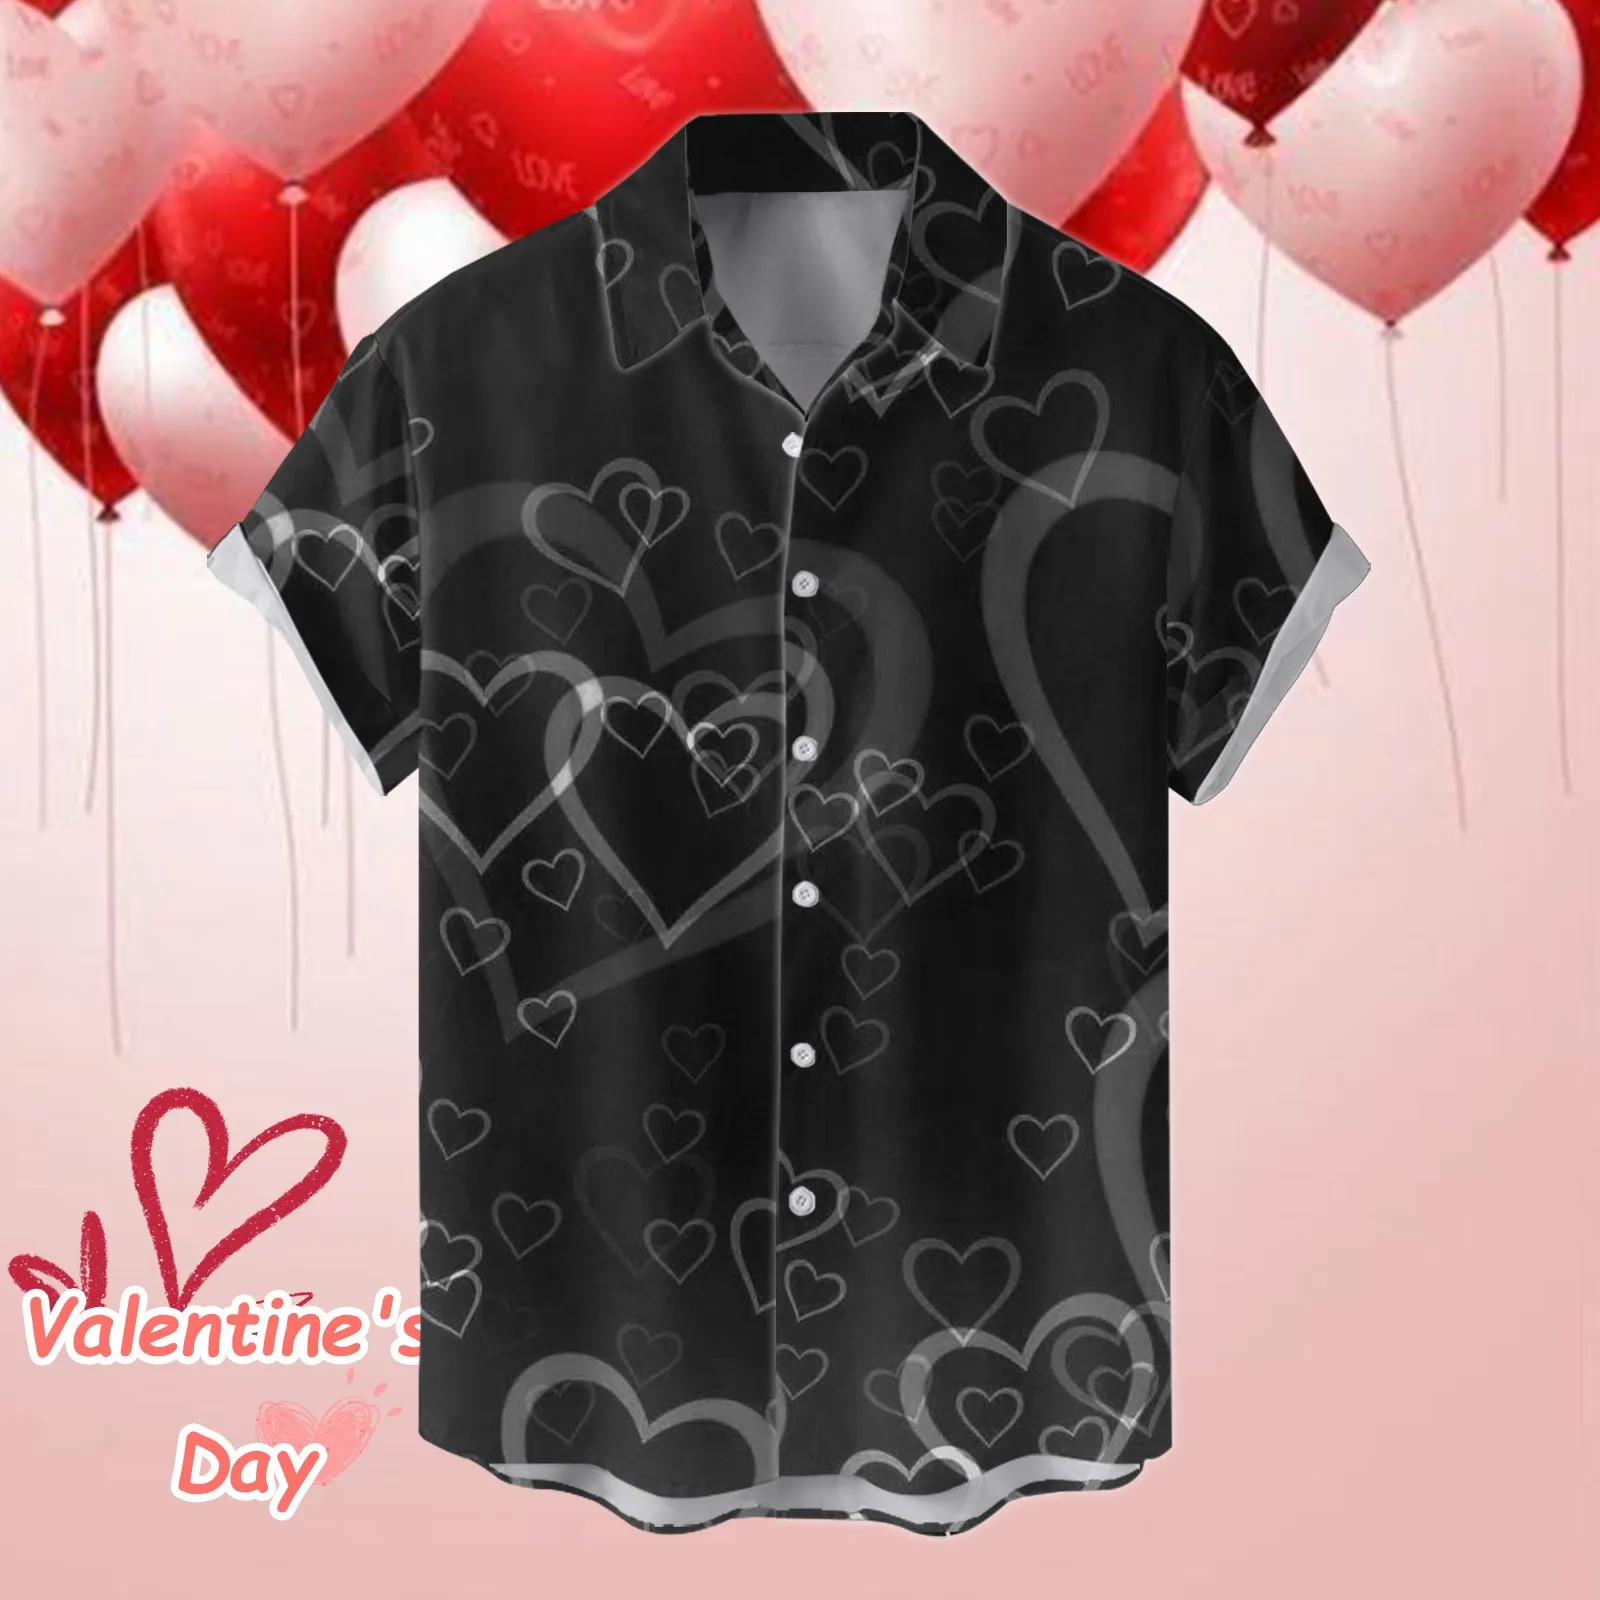 Мужская рубашка, подходящие к паре блузки, рубашки на День Святого Валентина, Повседневные рубашки для бойфренда и любовника Топы празднично-графические майки для отпуска